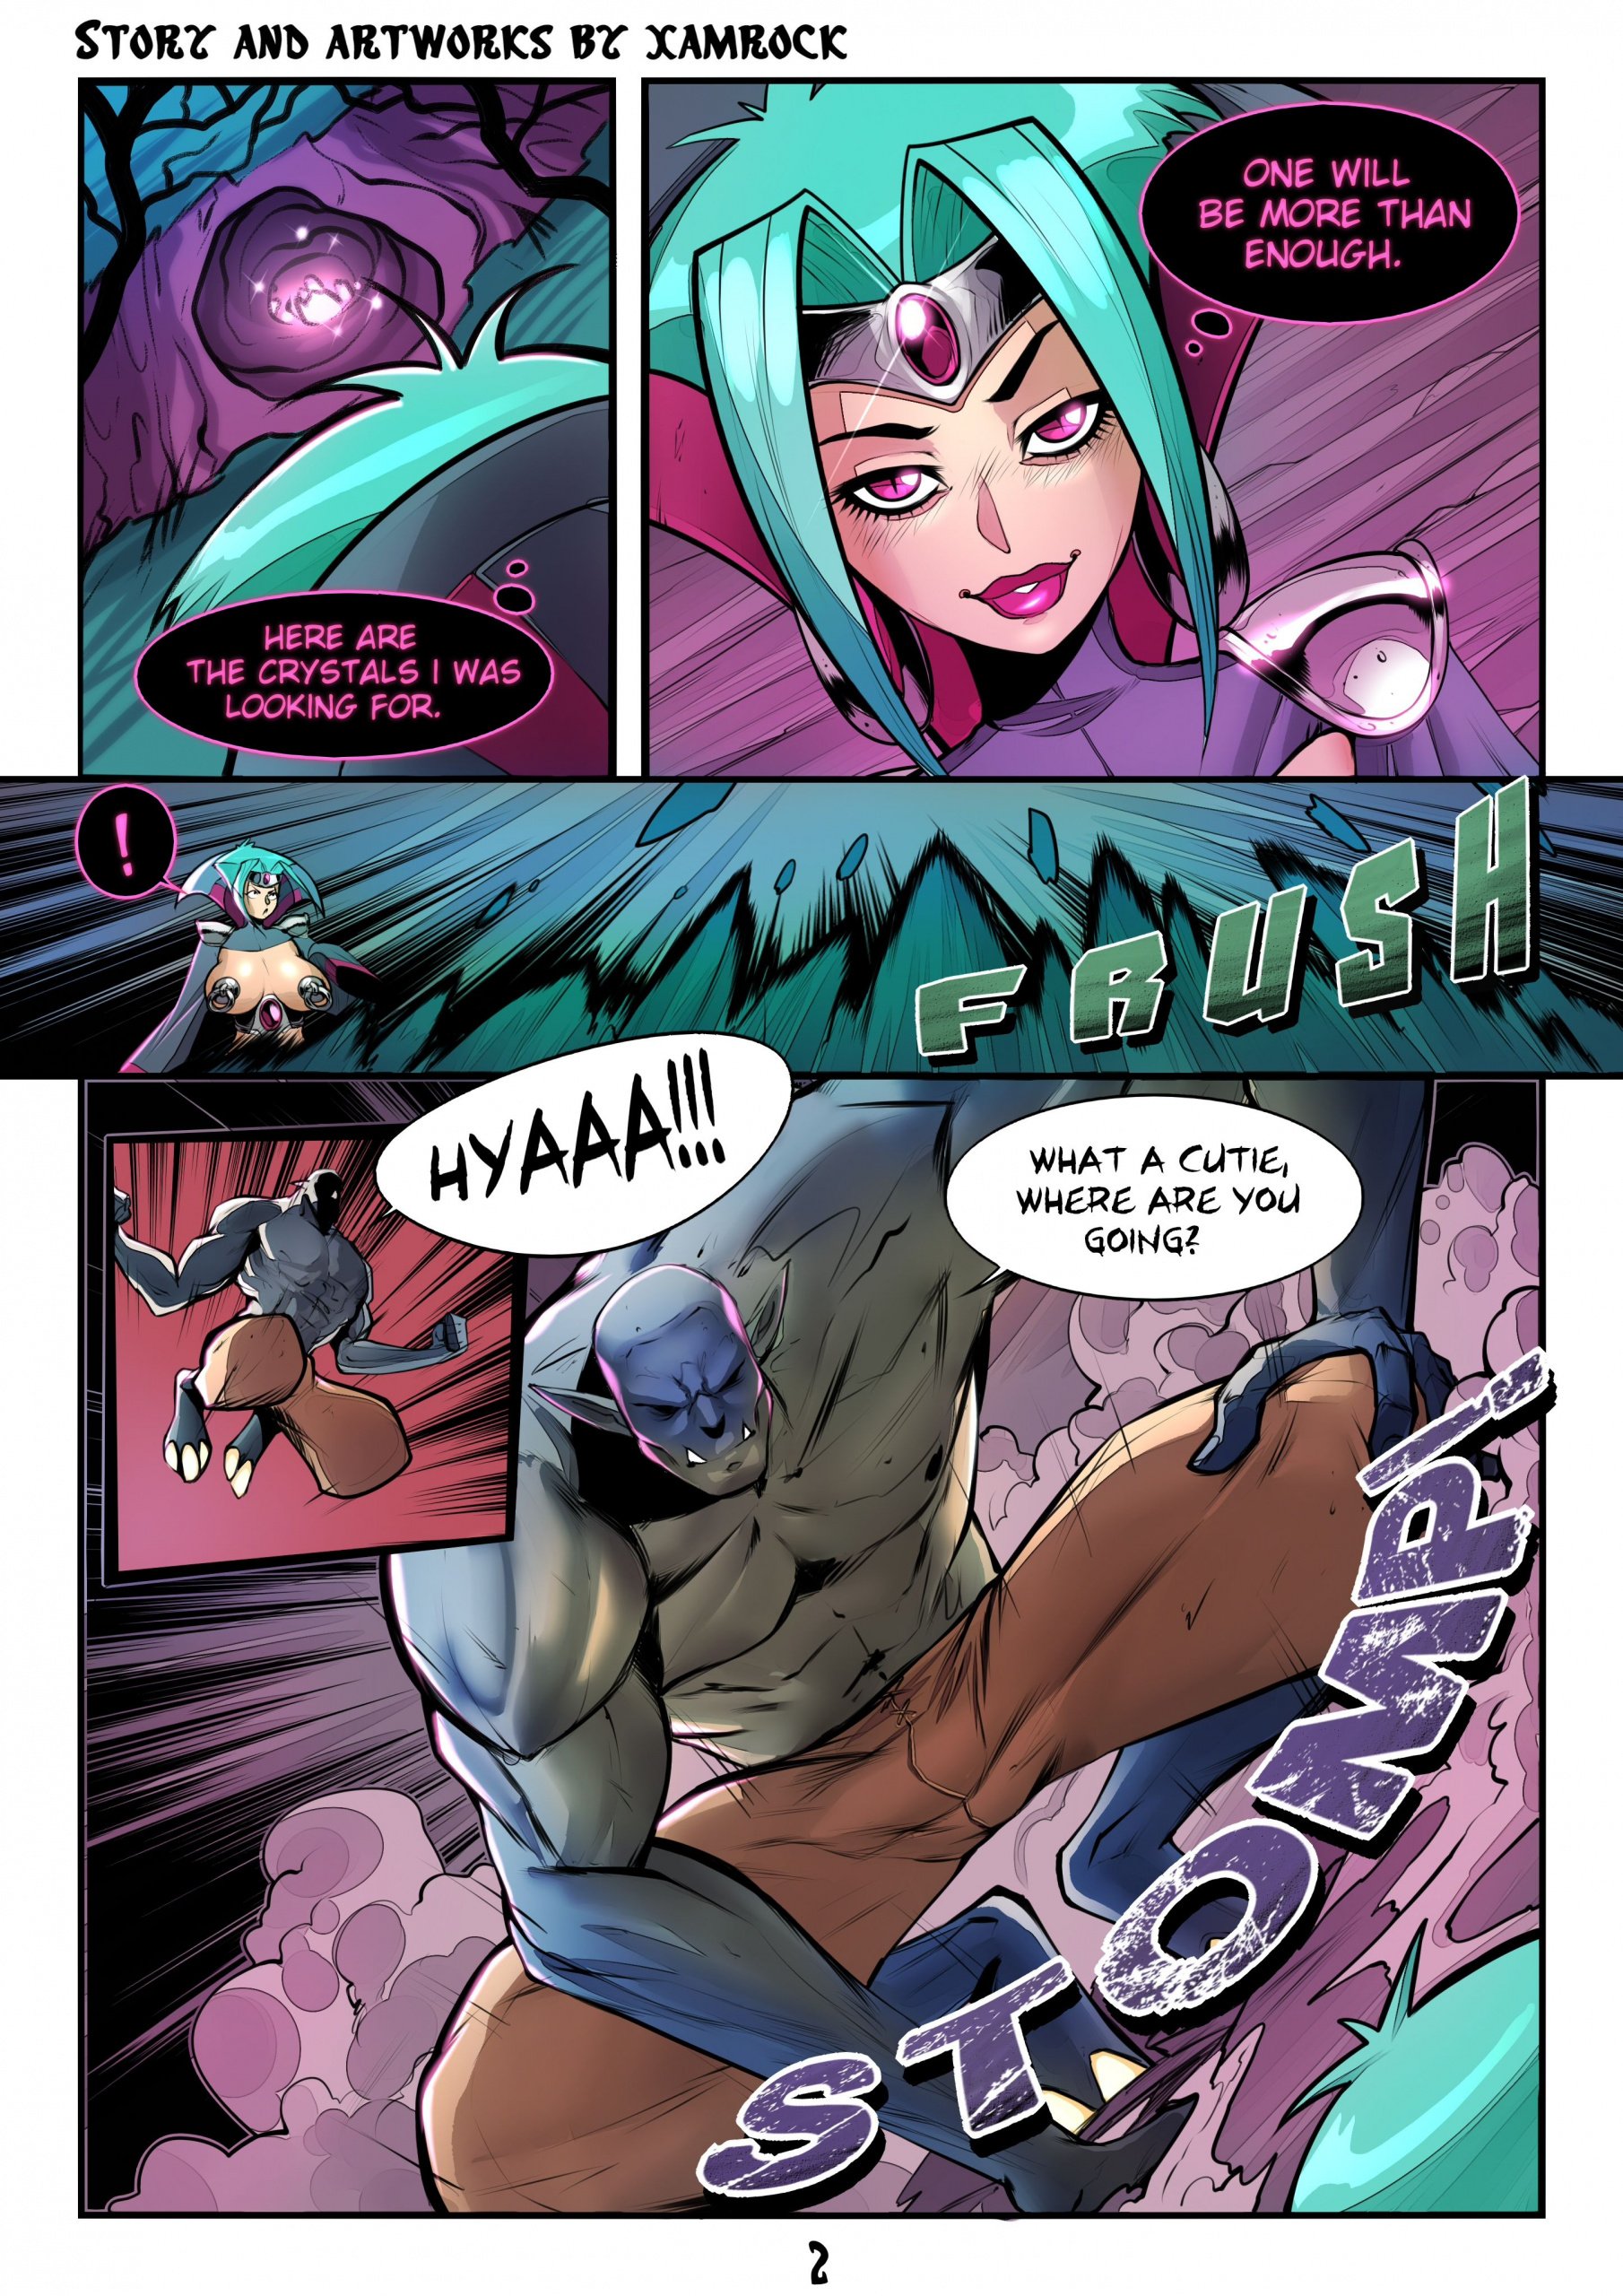 Evil Porn Big Breast Cartoons - Xamrock â€“ The Evil Enchantress | Top Hentai Comics